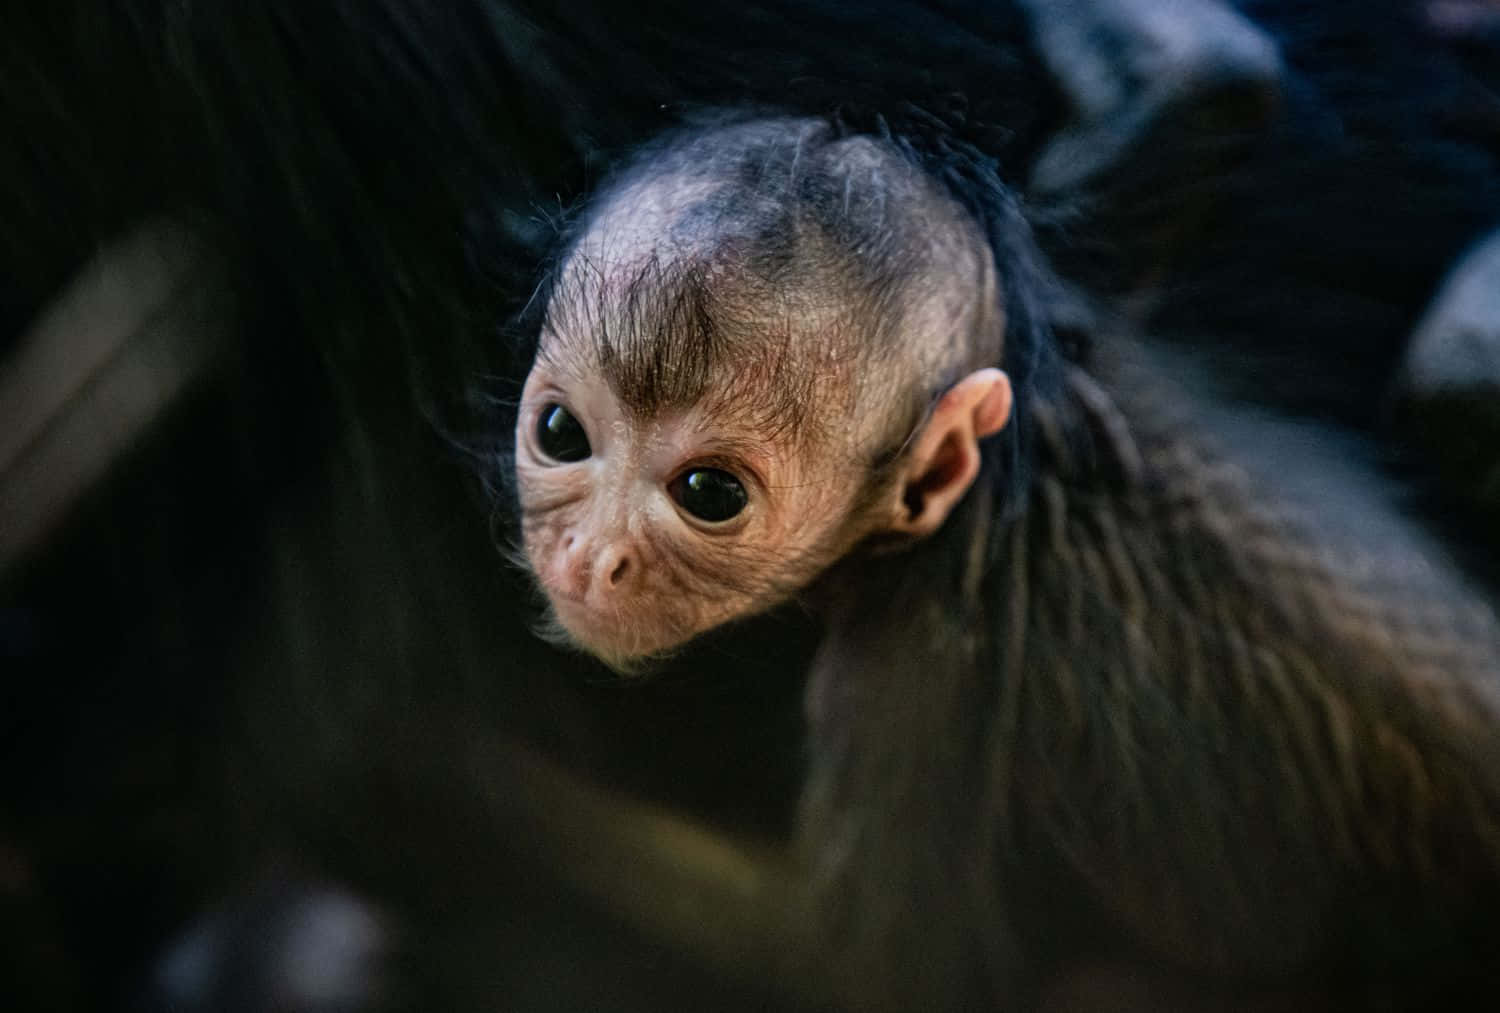 Adorable Baby Monkey!